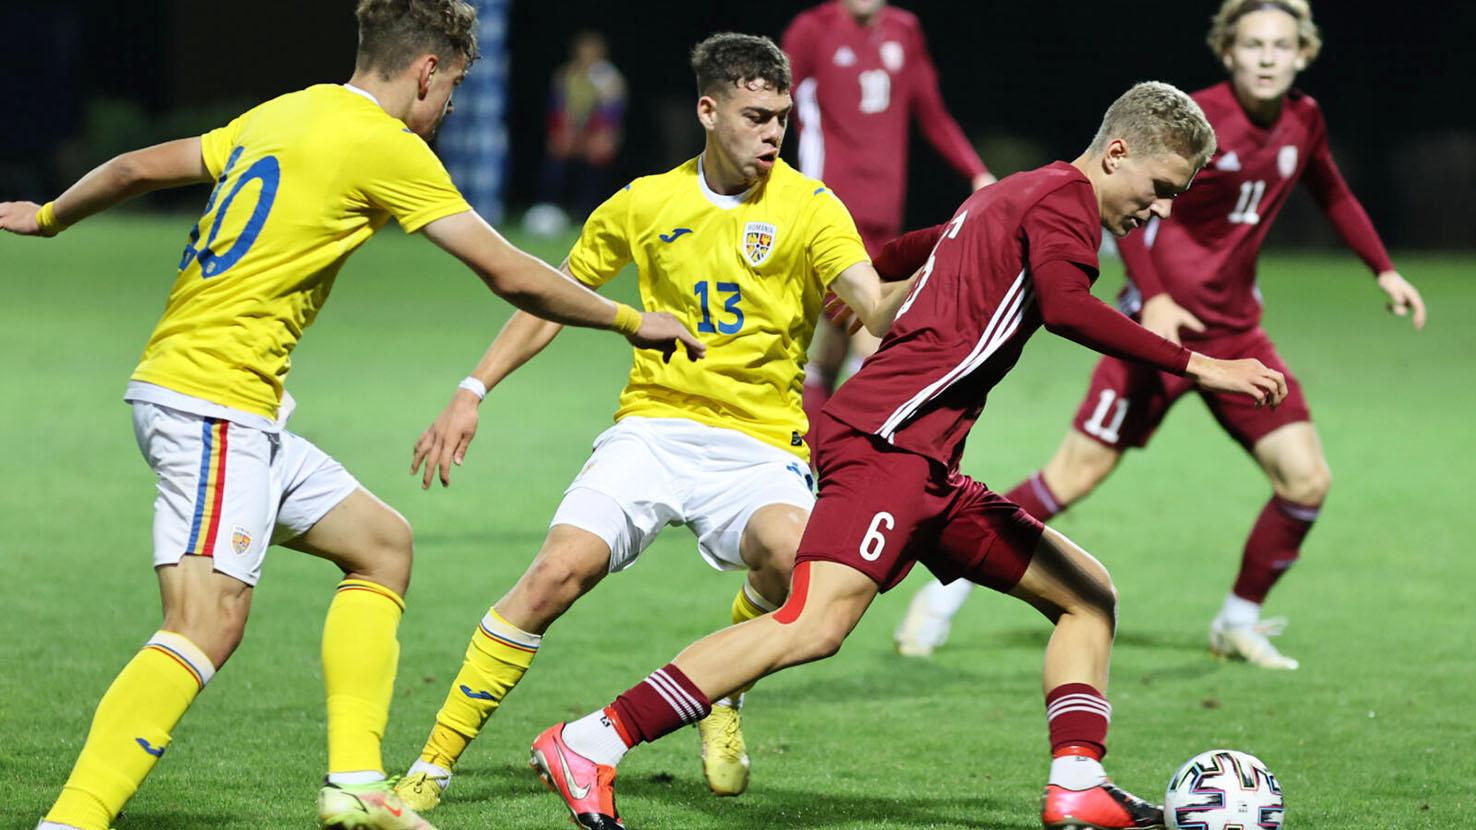 Naționala U19 a României a remizat, 0-0, cu Letonia, la Buftea, în debutul preliminariilor CE 2023